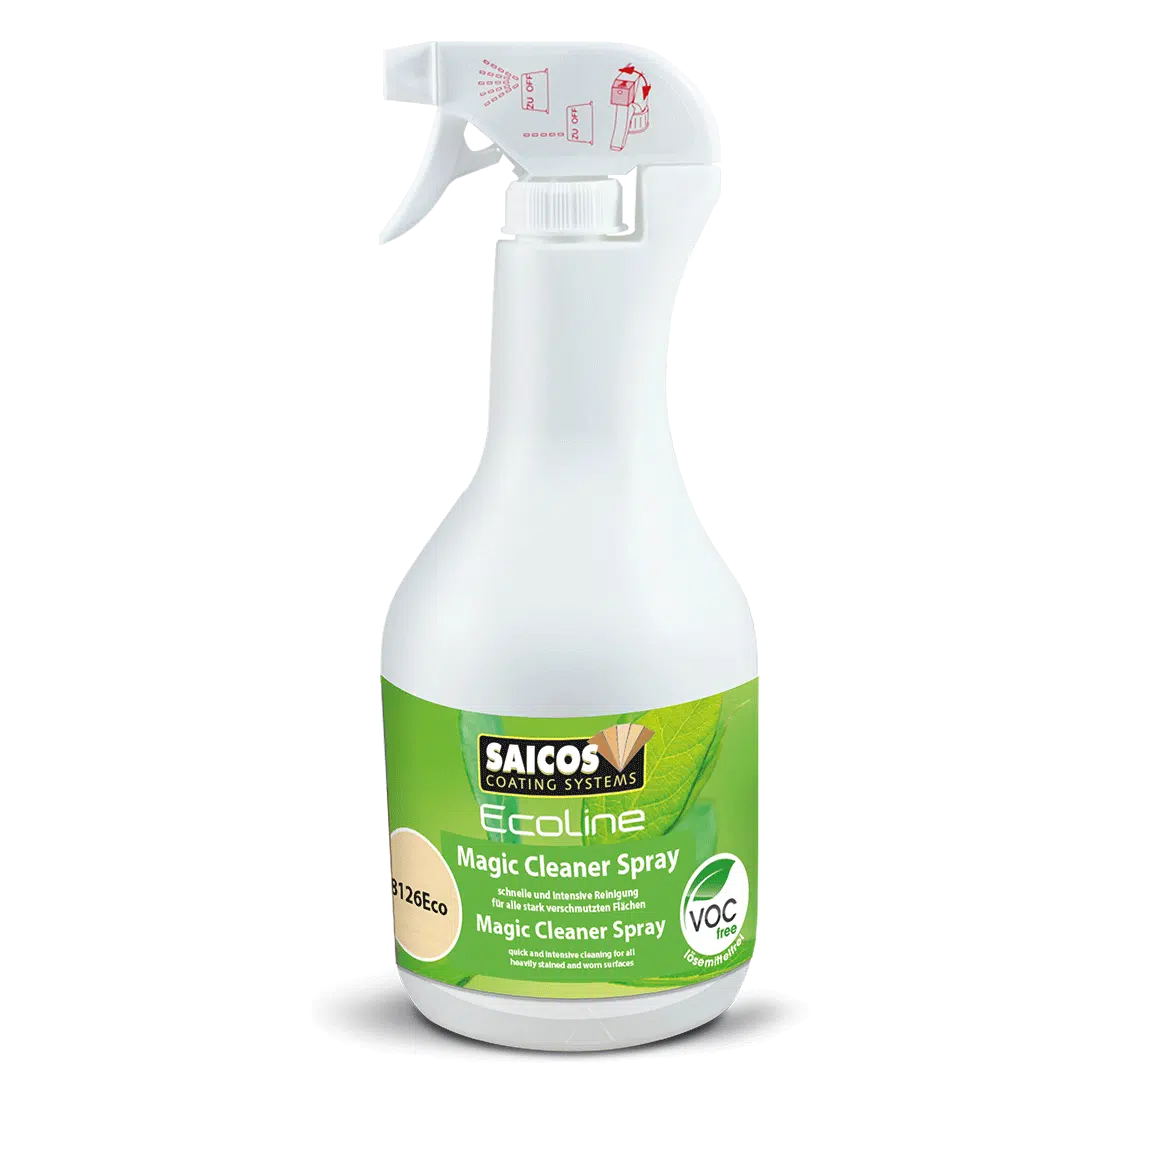 Saicos 8126 Ecoline Magic Cleaner Spray 8126Eco